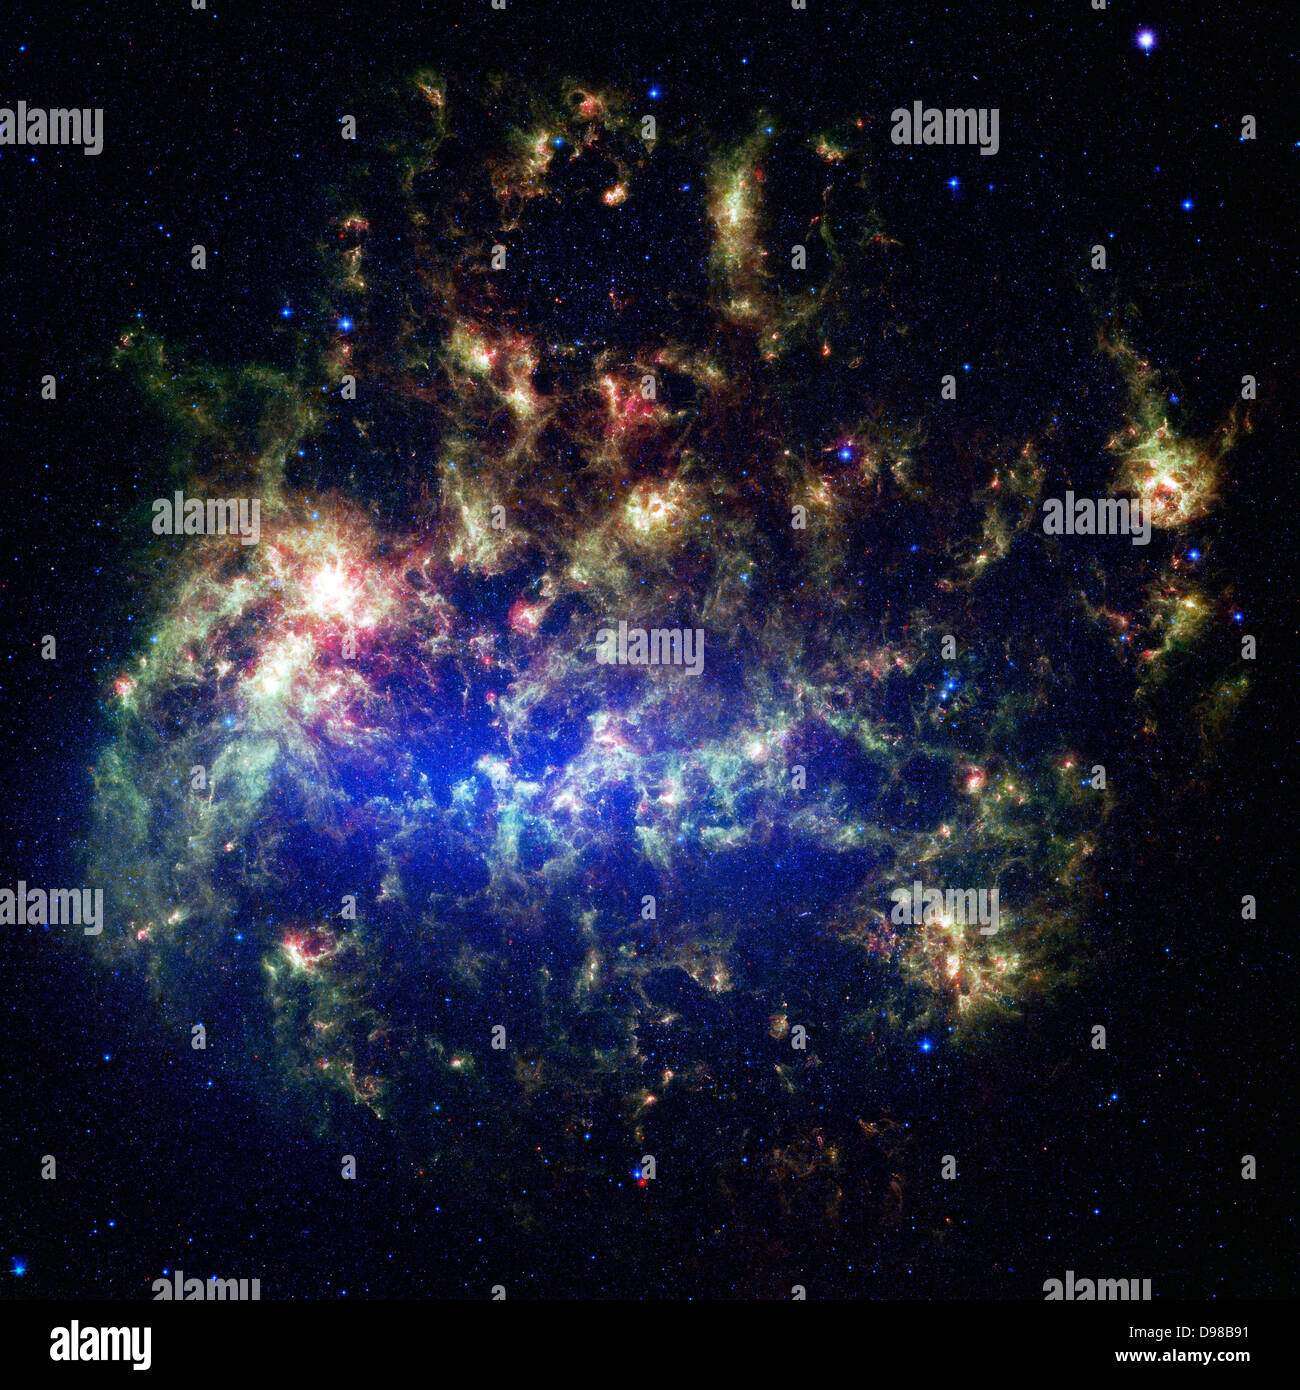 Telescopio spaziale Spitzer immagine del Grande Magellanic Cloud, un satellite galaxy per la nostra Via Lattea. I raggi infrarossi Foto Stock